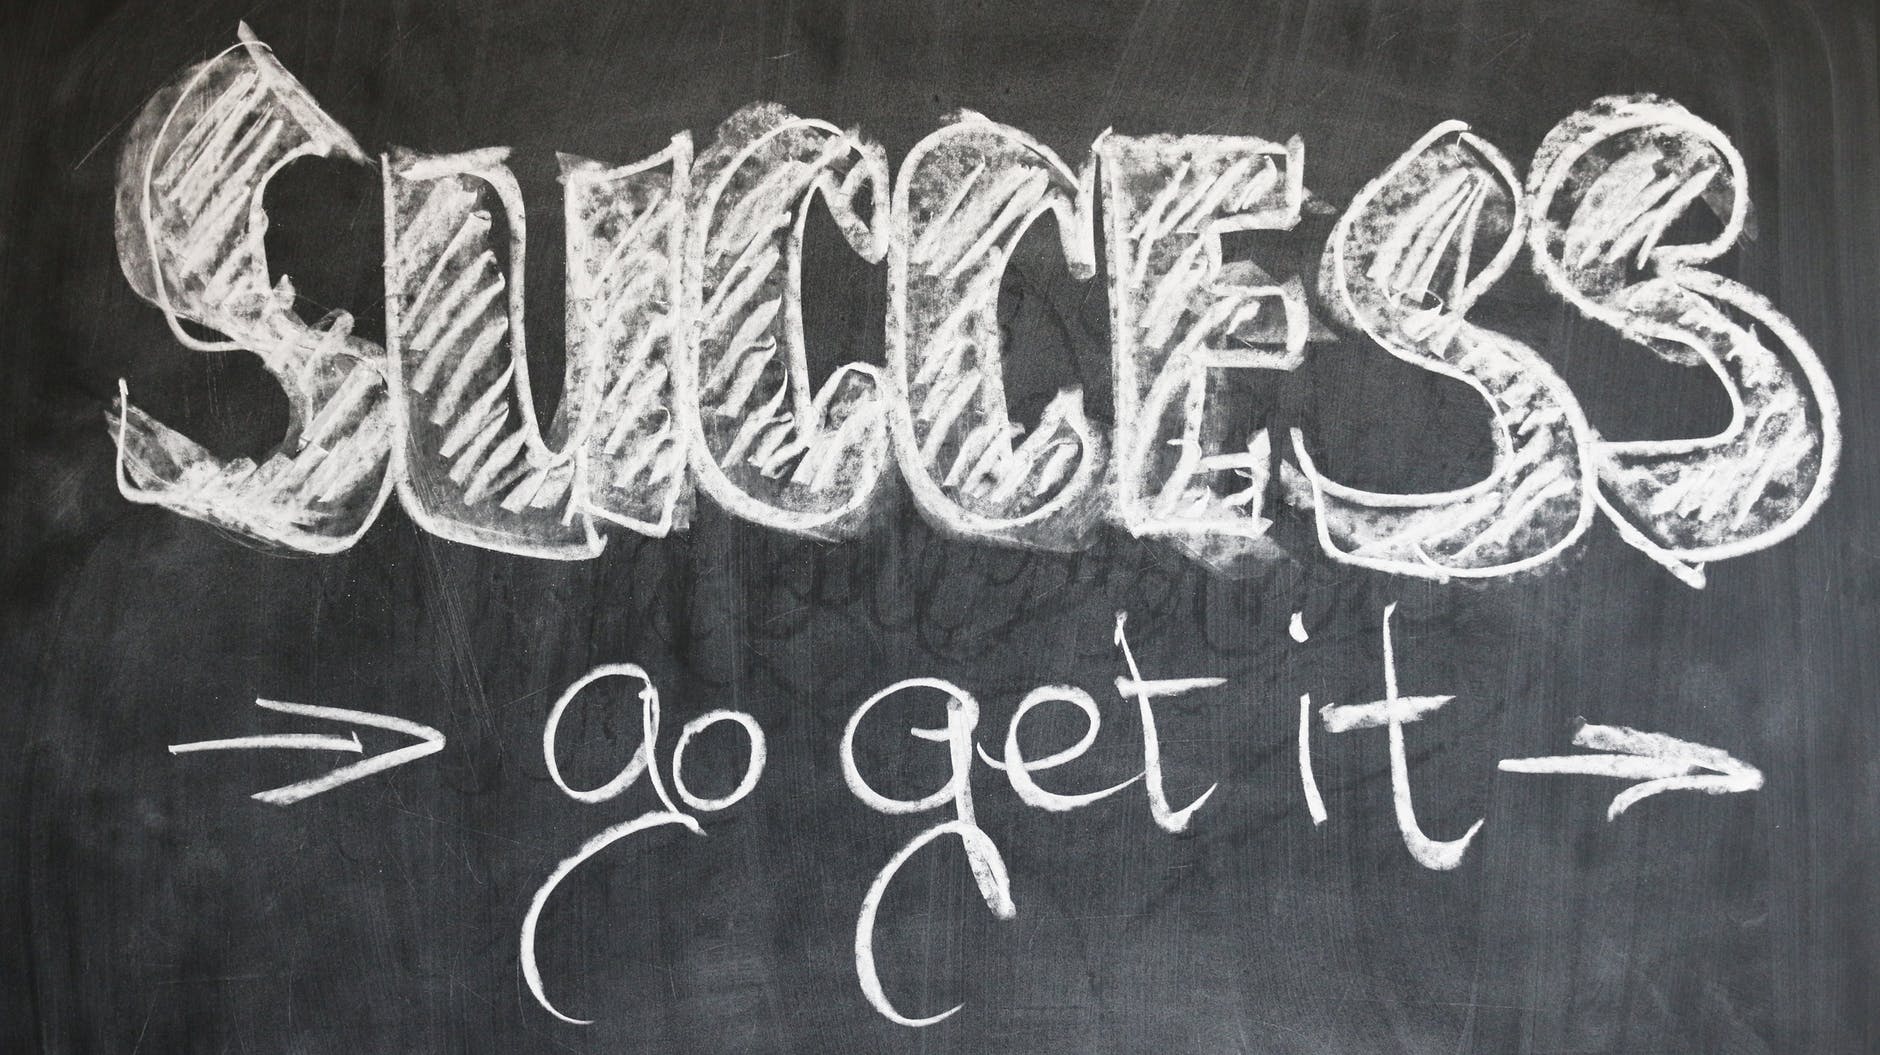 'Success, go get it' written on chalkboard